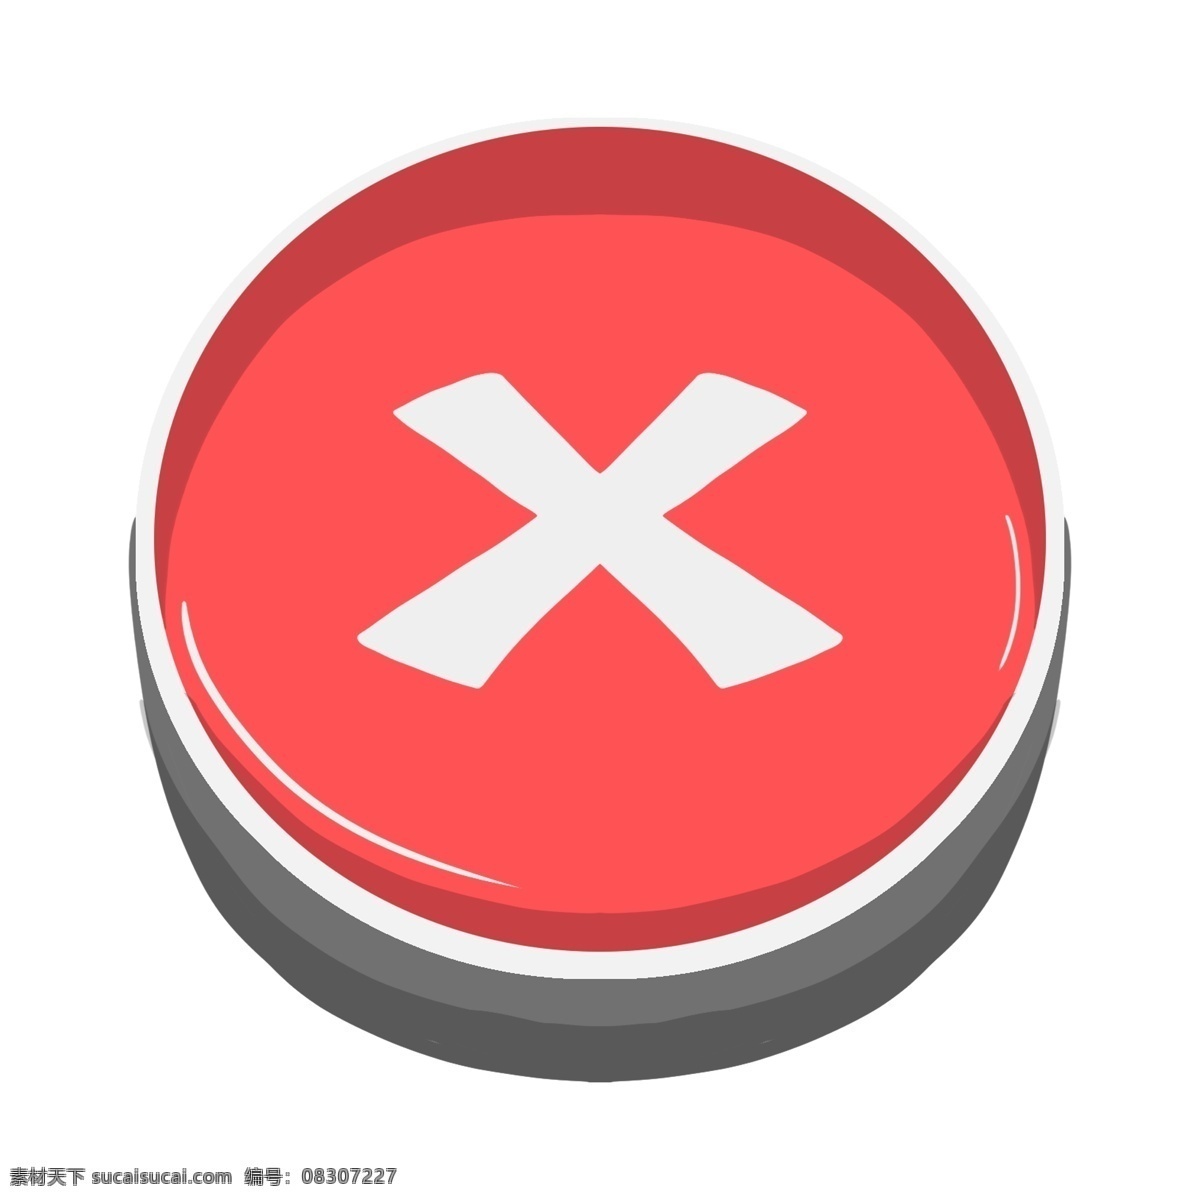 手绘 叉 号 按钮 插画 手绘按钮 白色叉号 叉号按钮插画 红色按钮 圆形按钮 圆形按钮插图 手绘圆形按钮